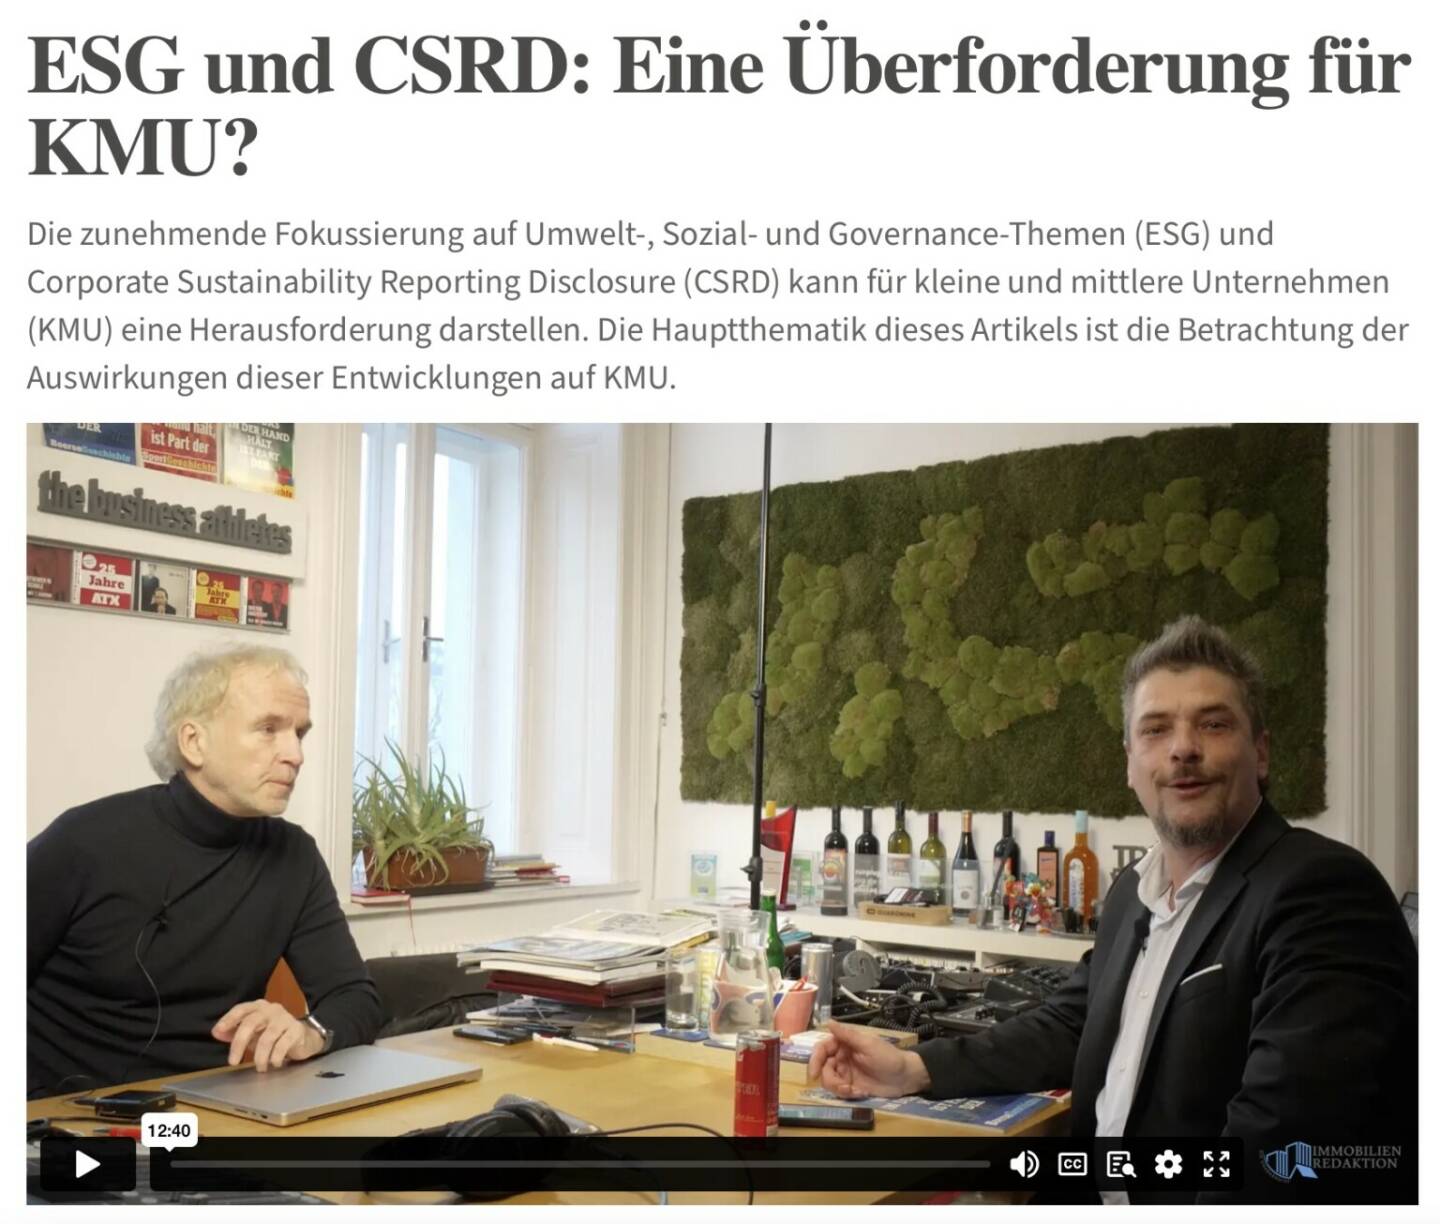 Von Gerhard Popp ver-vlog-ed für https://immobilien-redaktion.com/kategorie/office-talk/artikel/esg-und-csrd-eine-ueberforderung-fuer-kmu 
